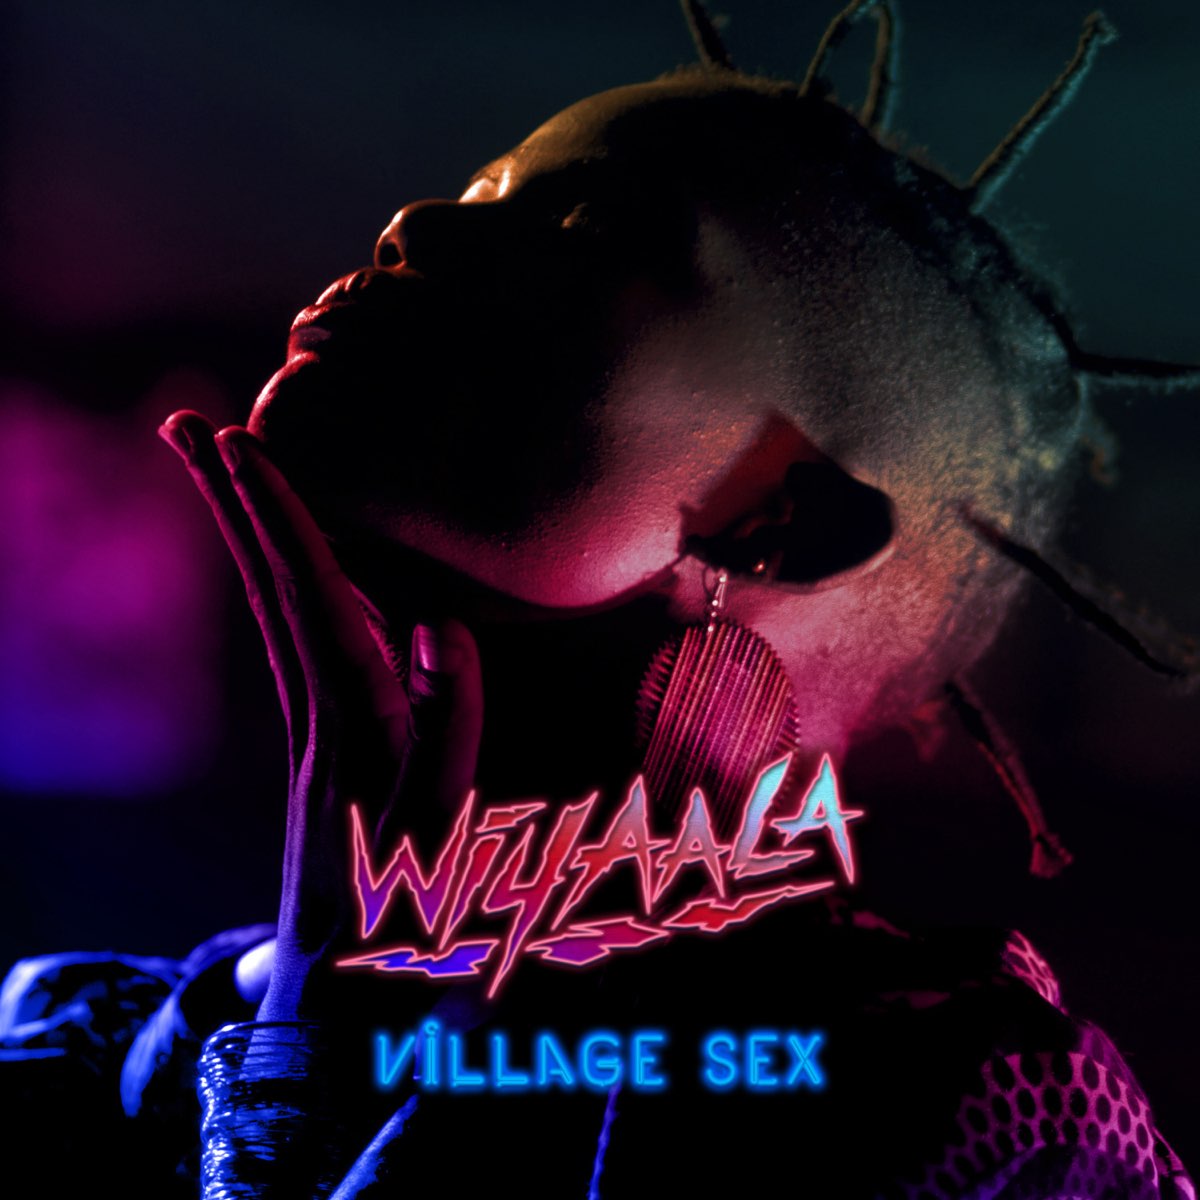 Village sex